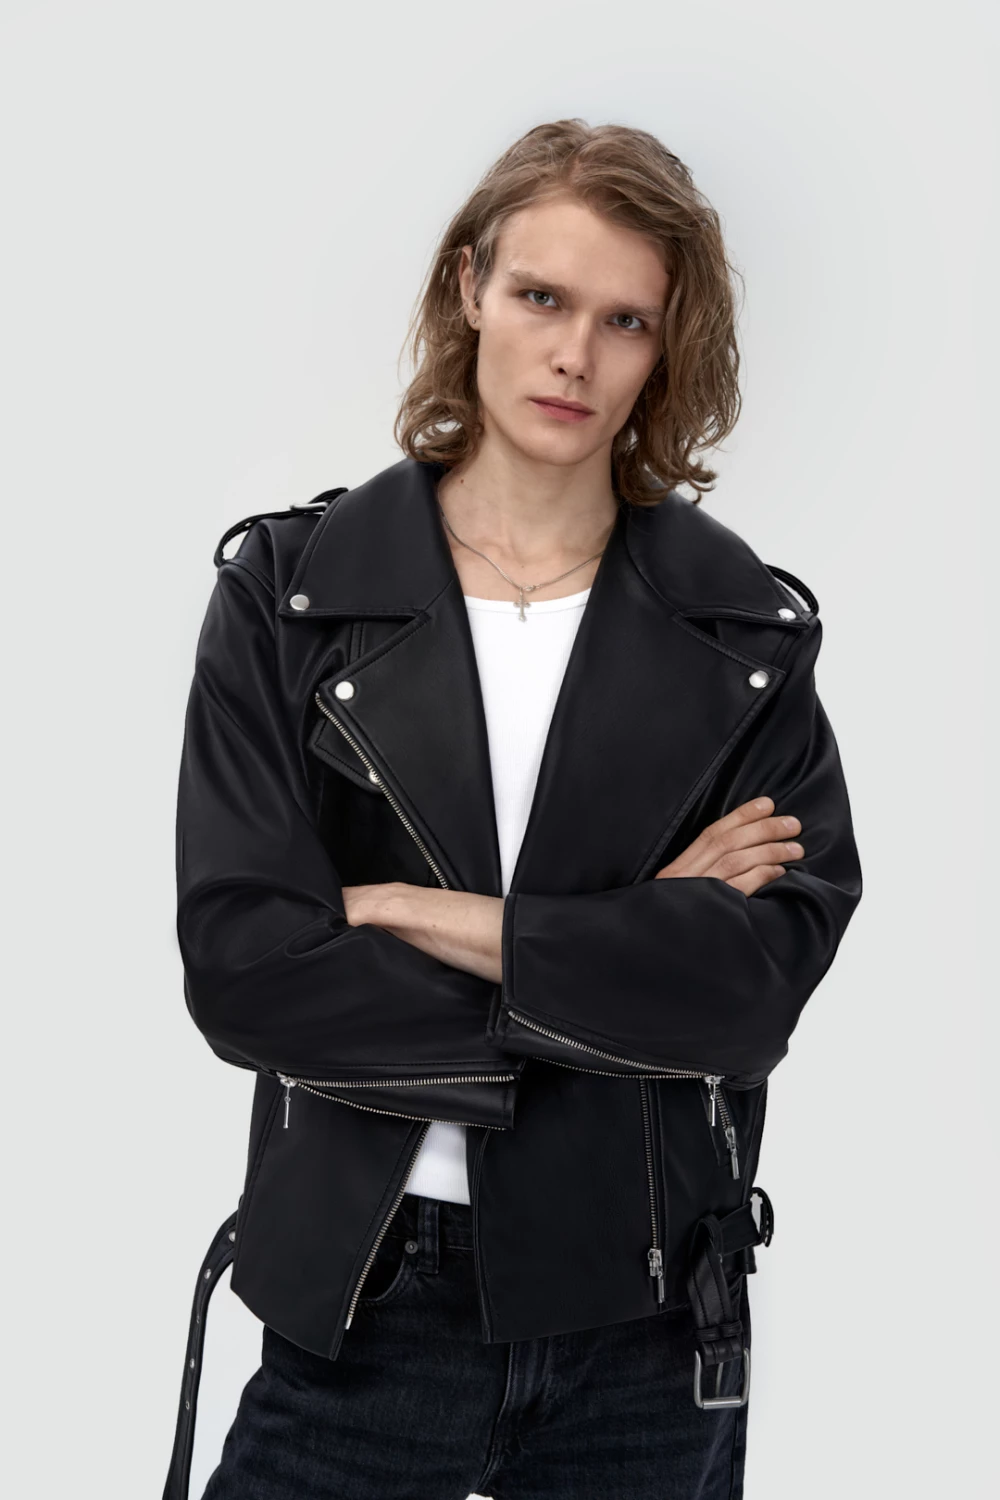 biker jacket in black color